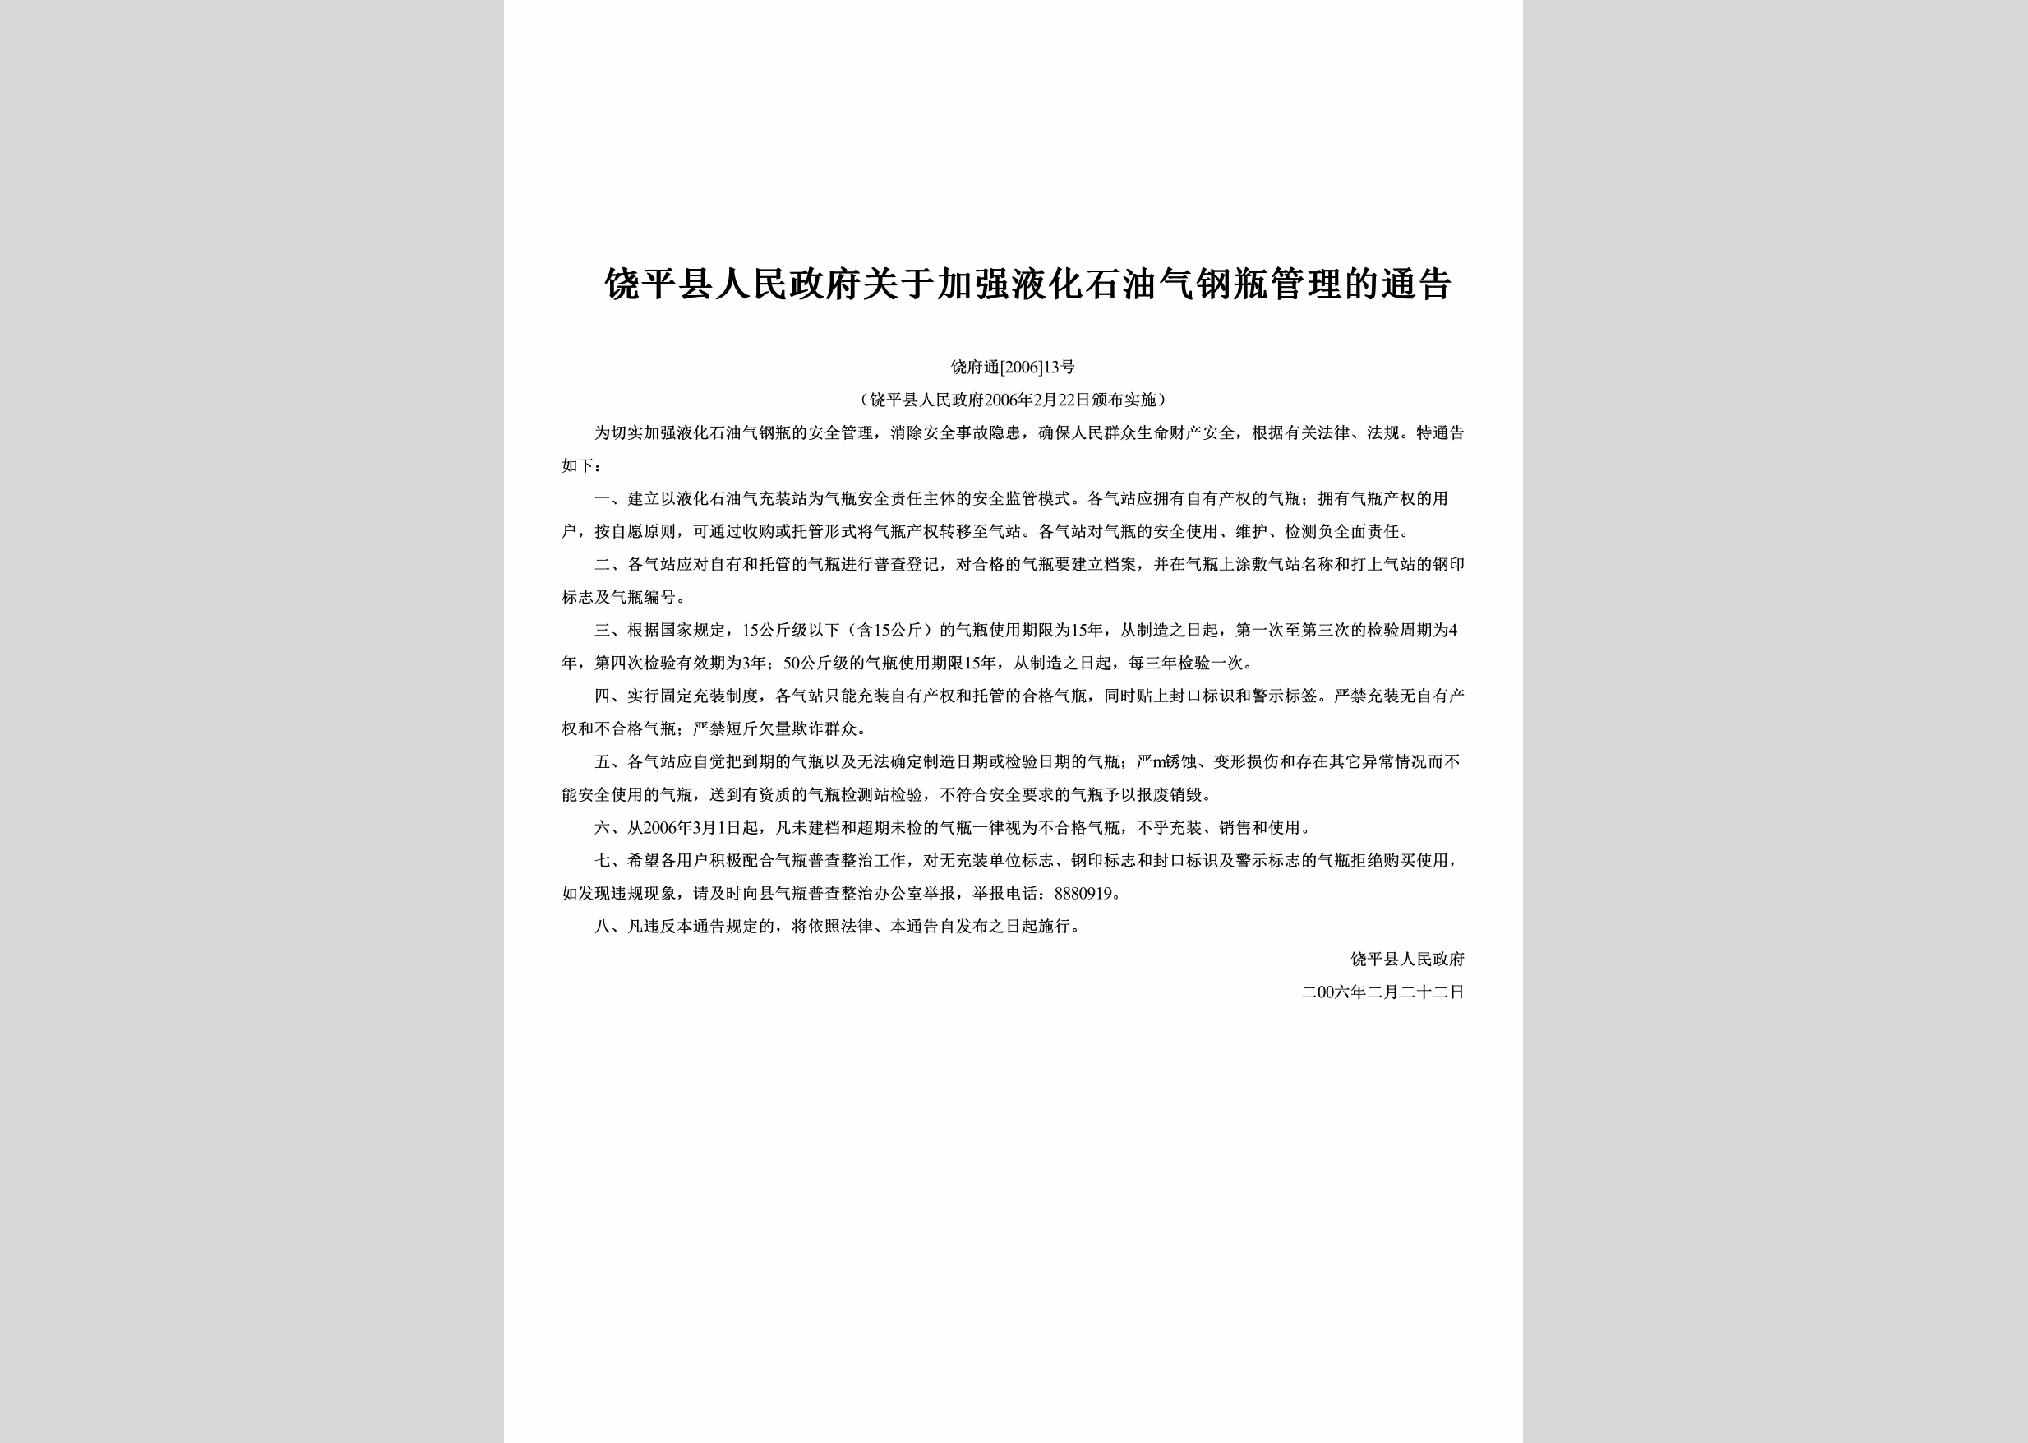 饶府通[2006]13号：关于加强液化石油气钢瓶管理的通告